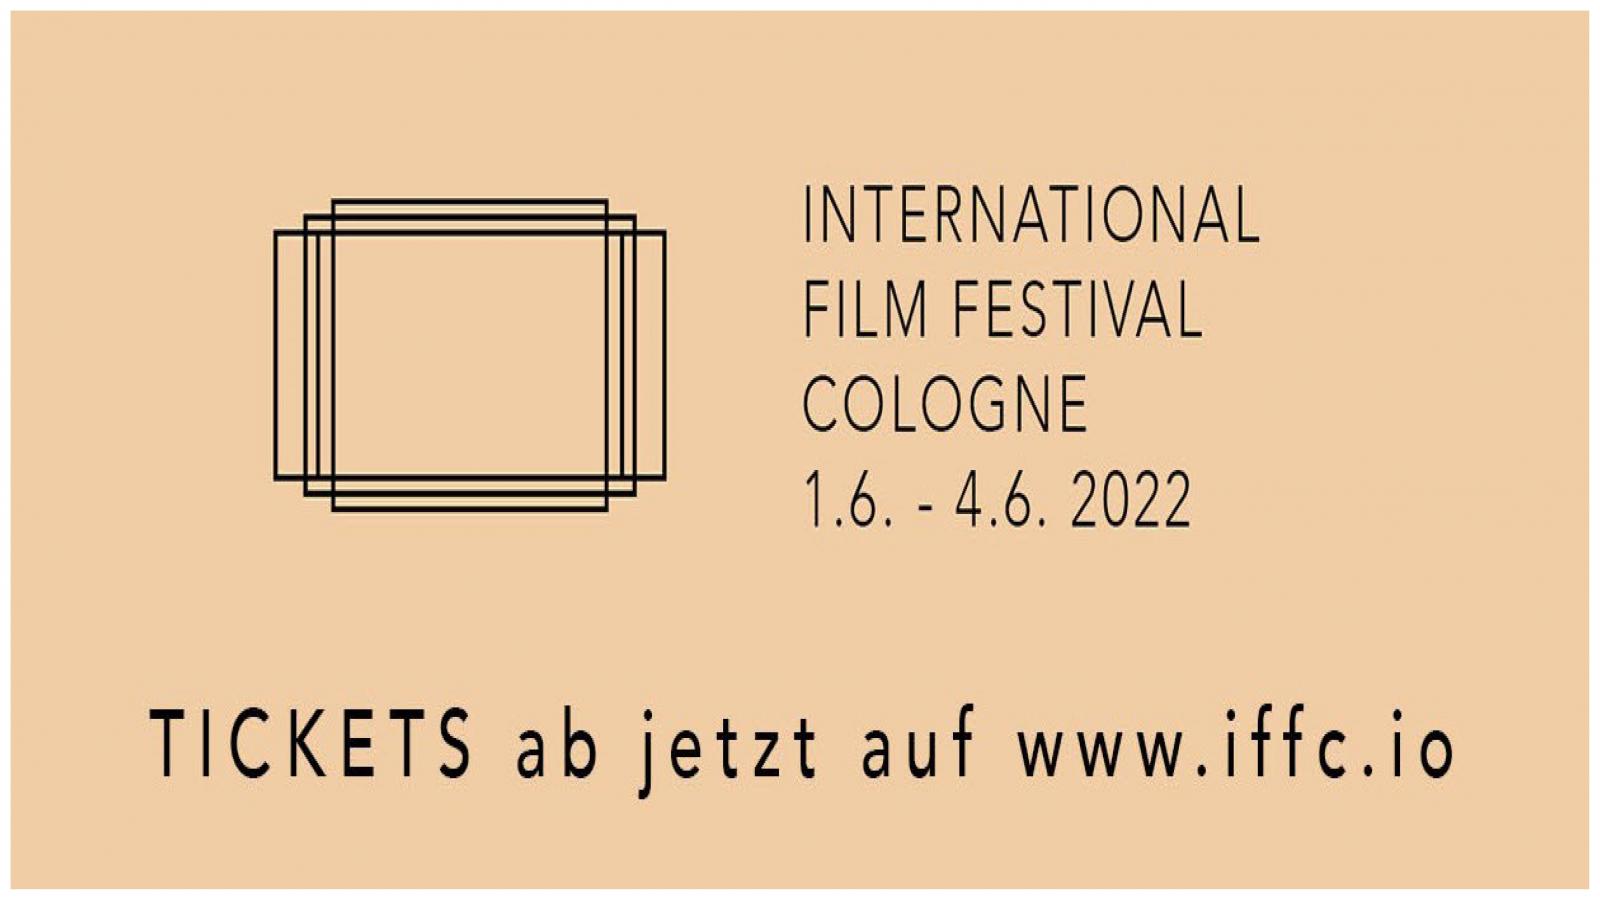 International Film Festival Cologne